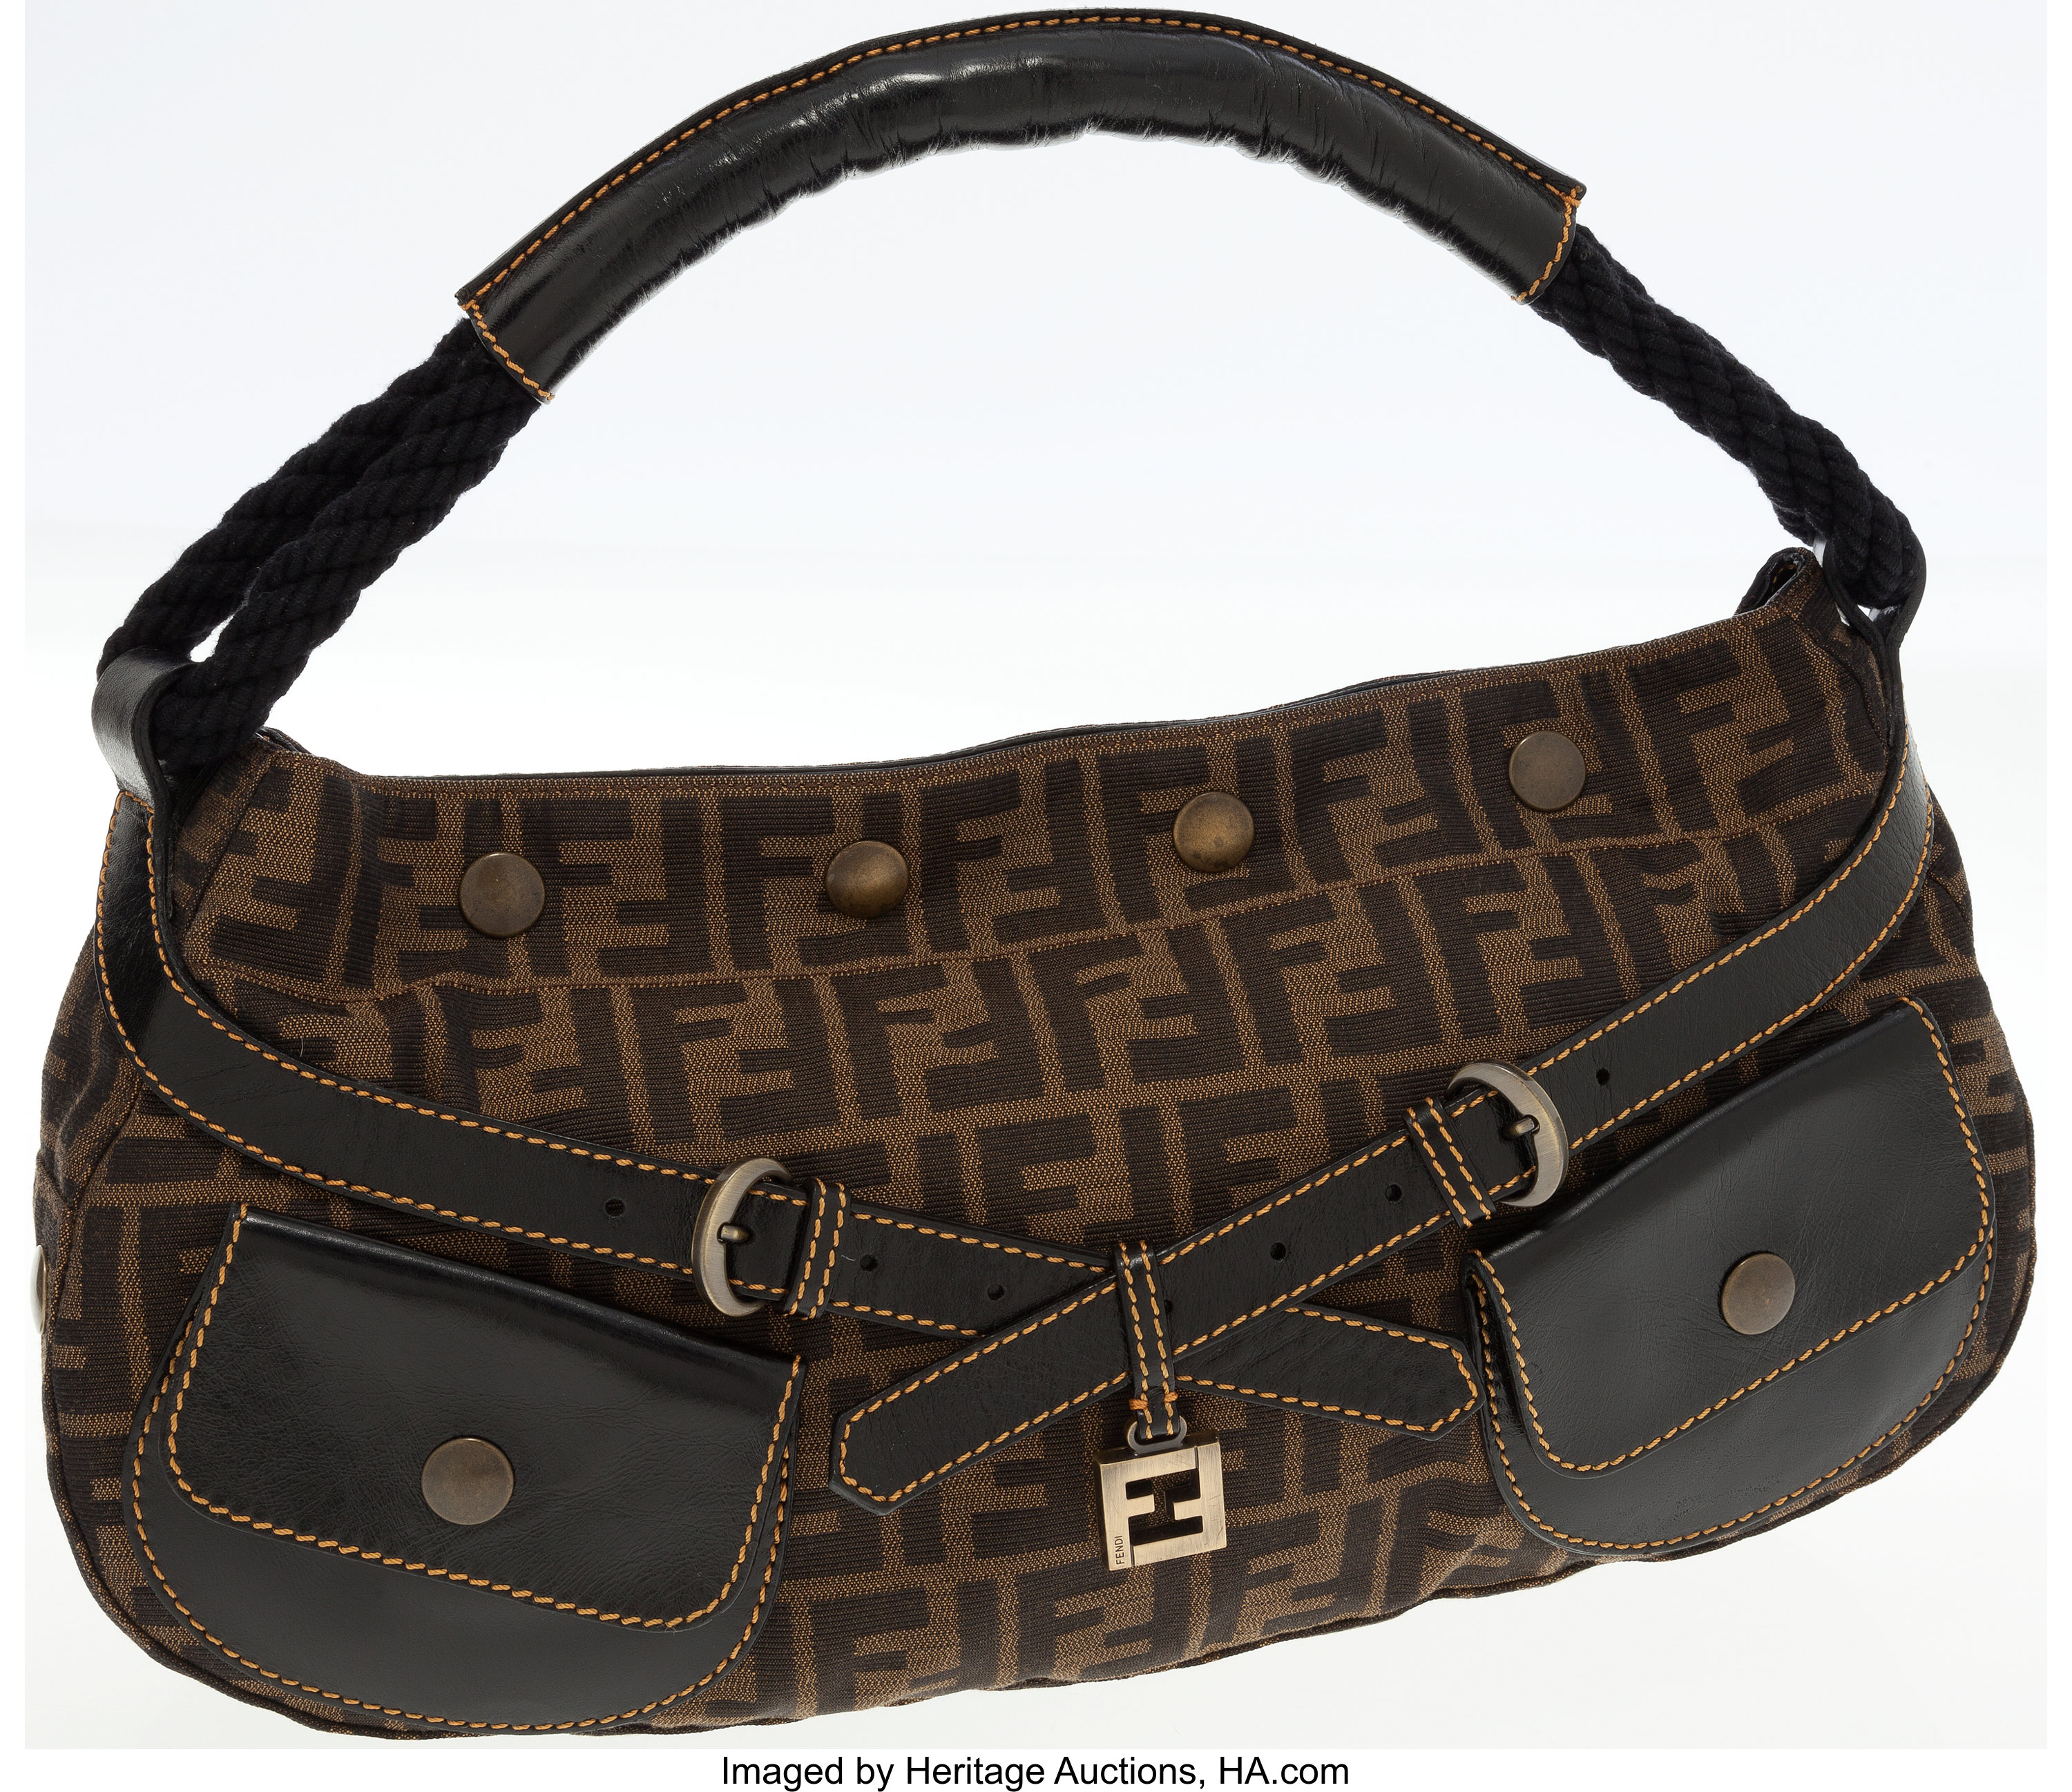 Sold at Auction: AUTHENTIC FENDI ZUCCA CANVAS SHOULDER BAG